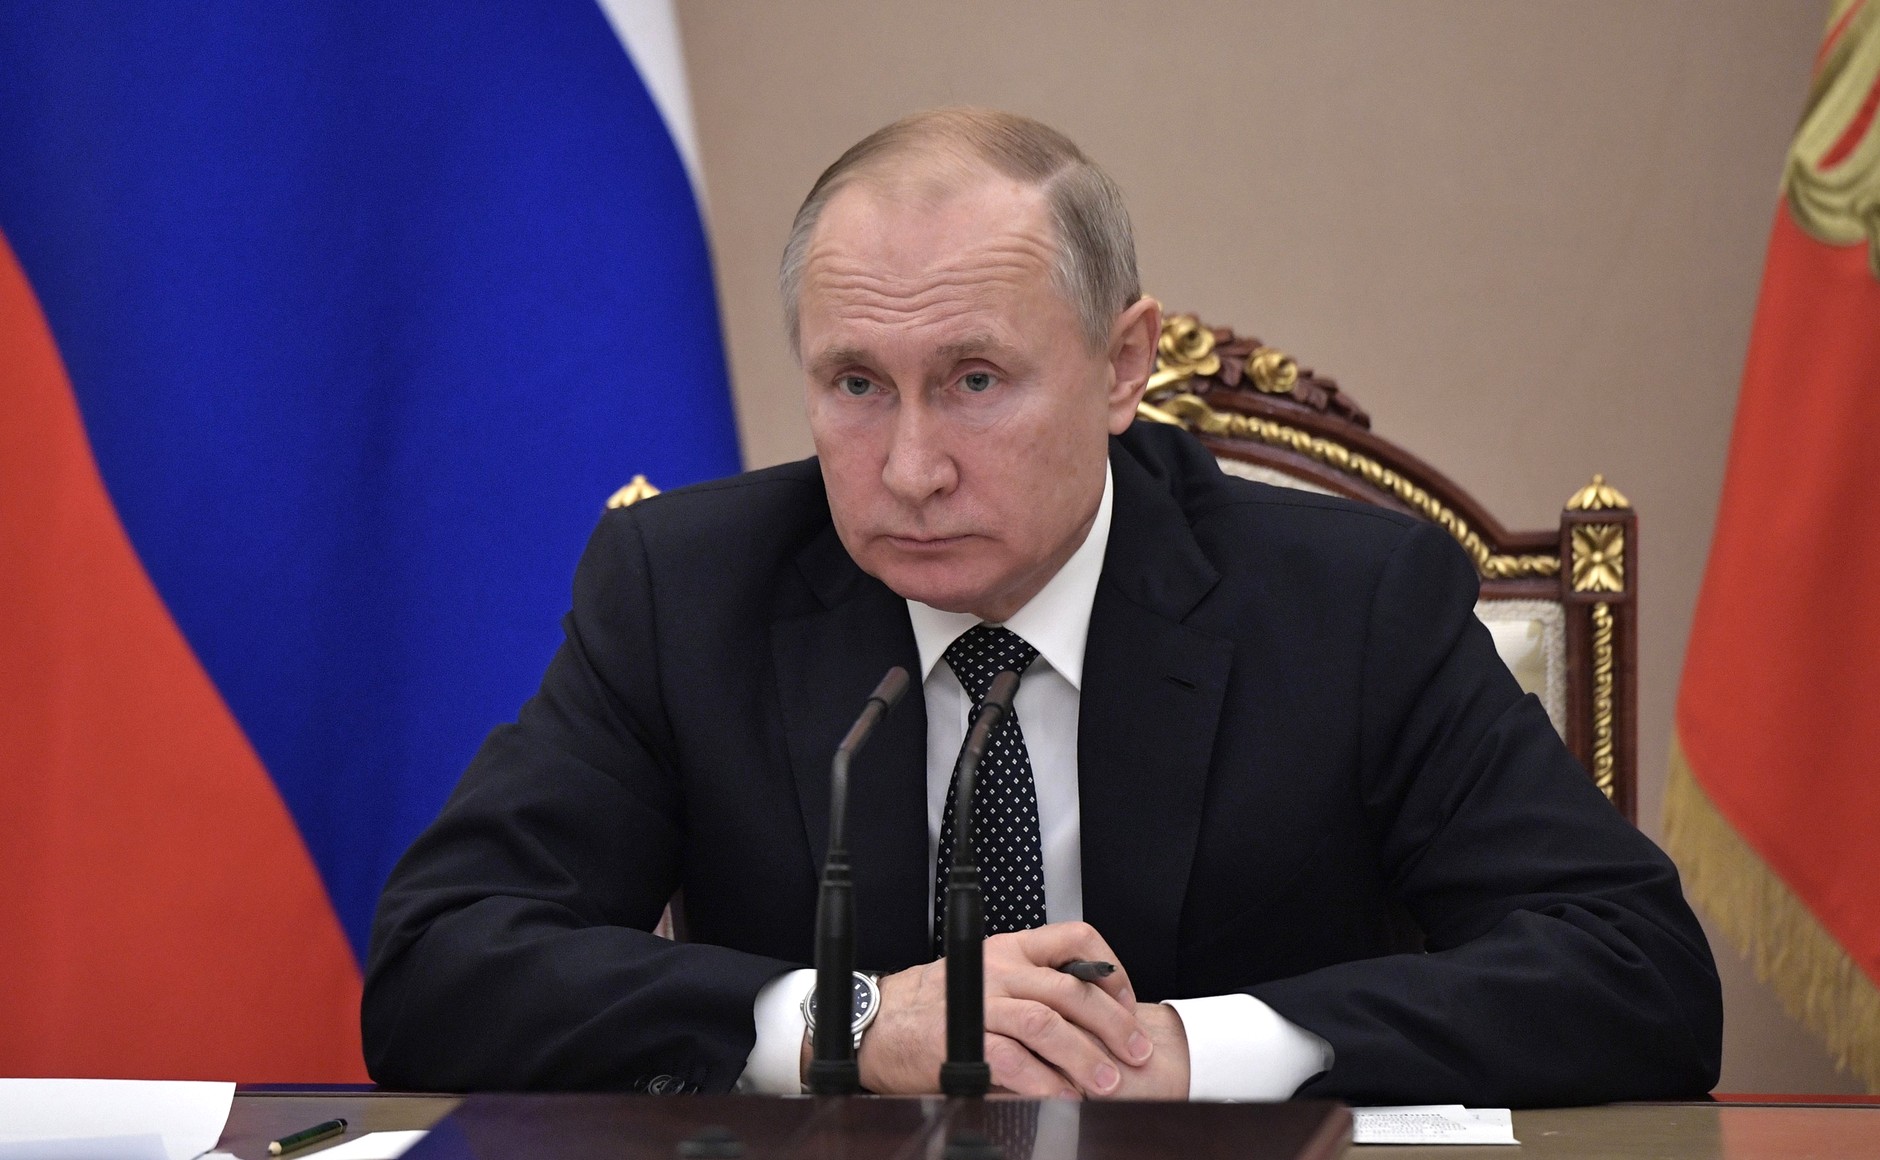 Где и сколько заболевших Коронавирусом в России на сегодня, последние новости на 6 мая 2020: Будет новое выступление Путина |